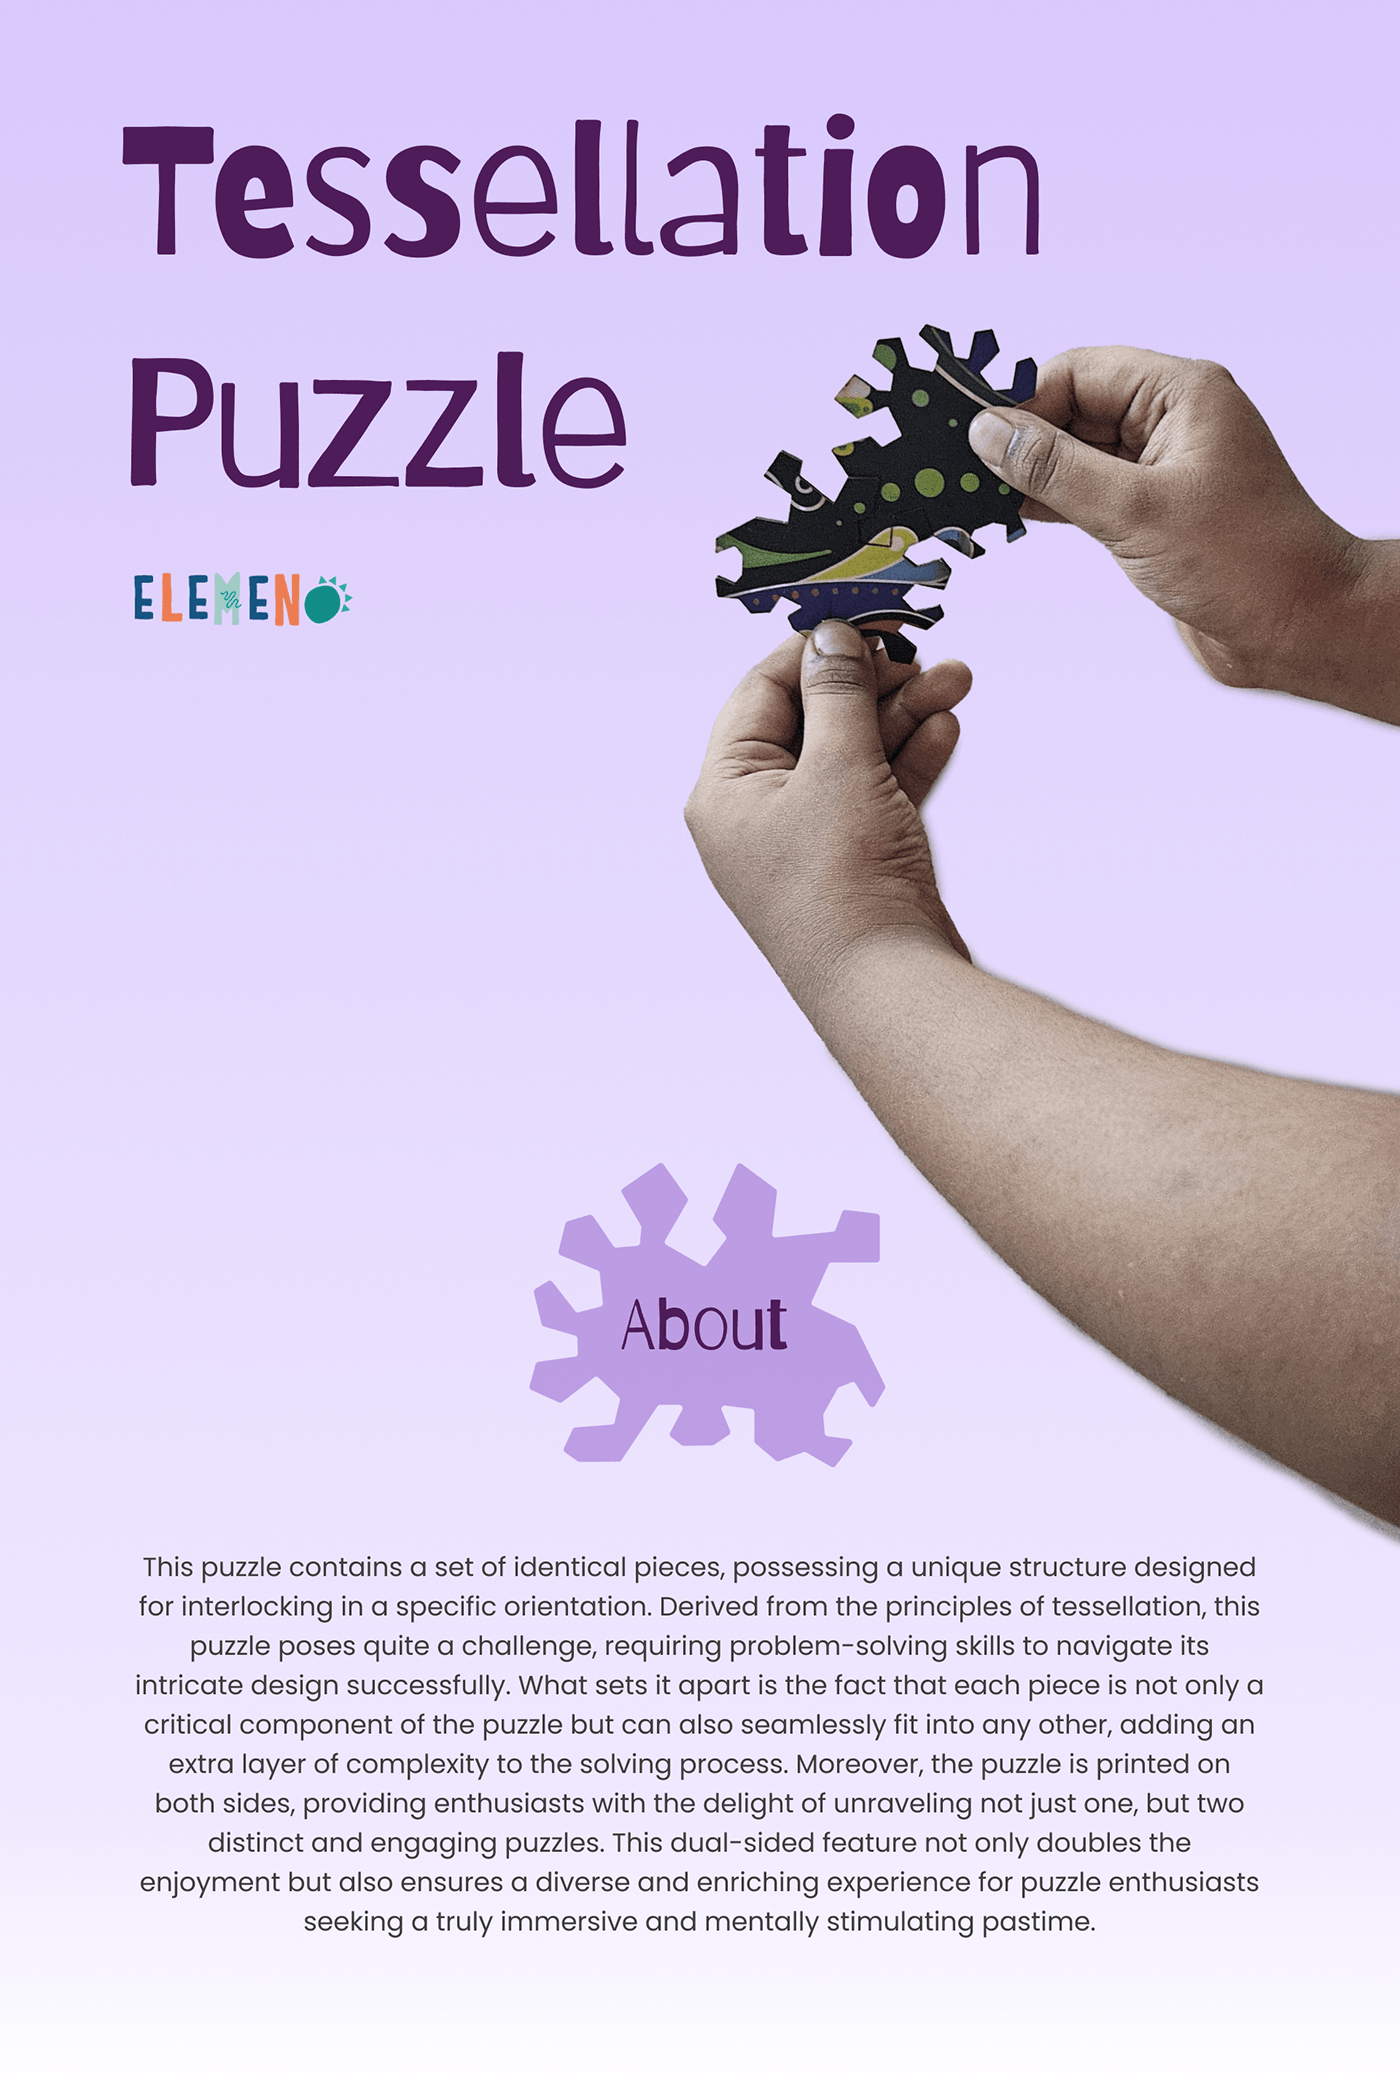 design product design  kids game toy puzzle graphic design  ILLUSTRATION  India culture